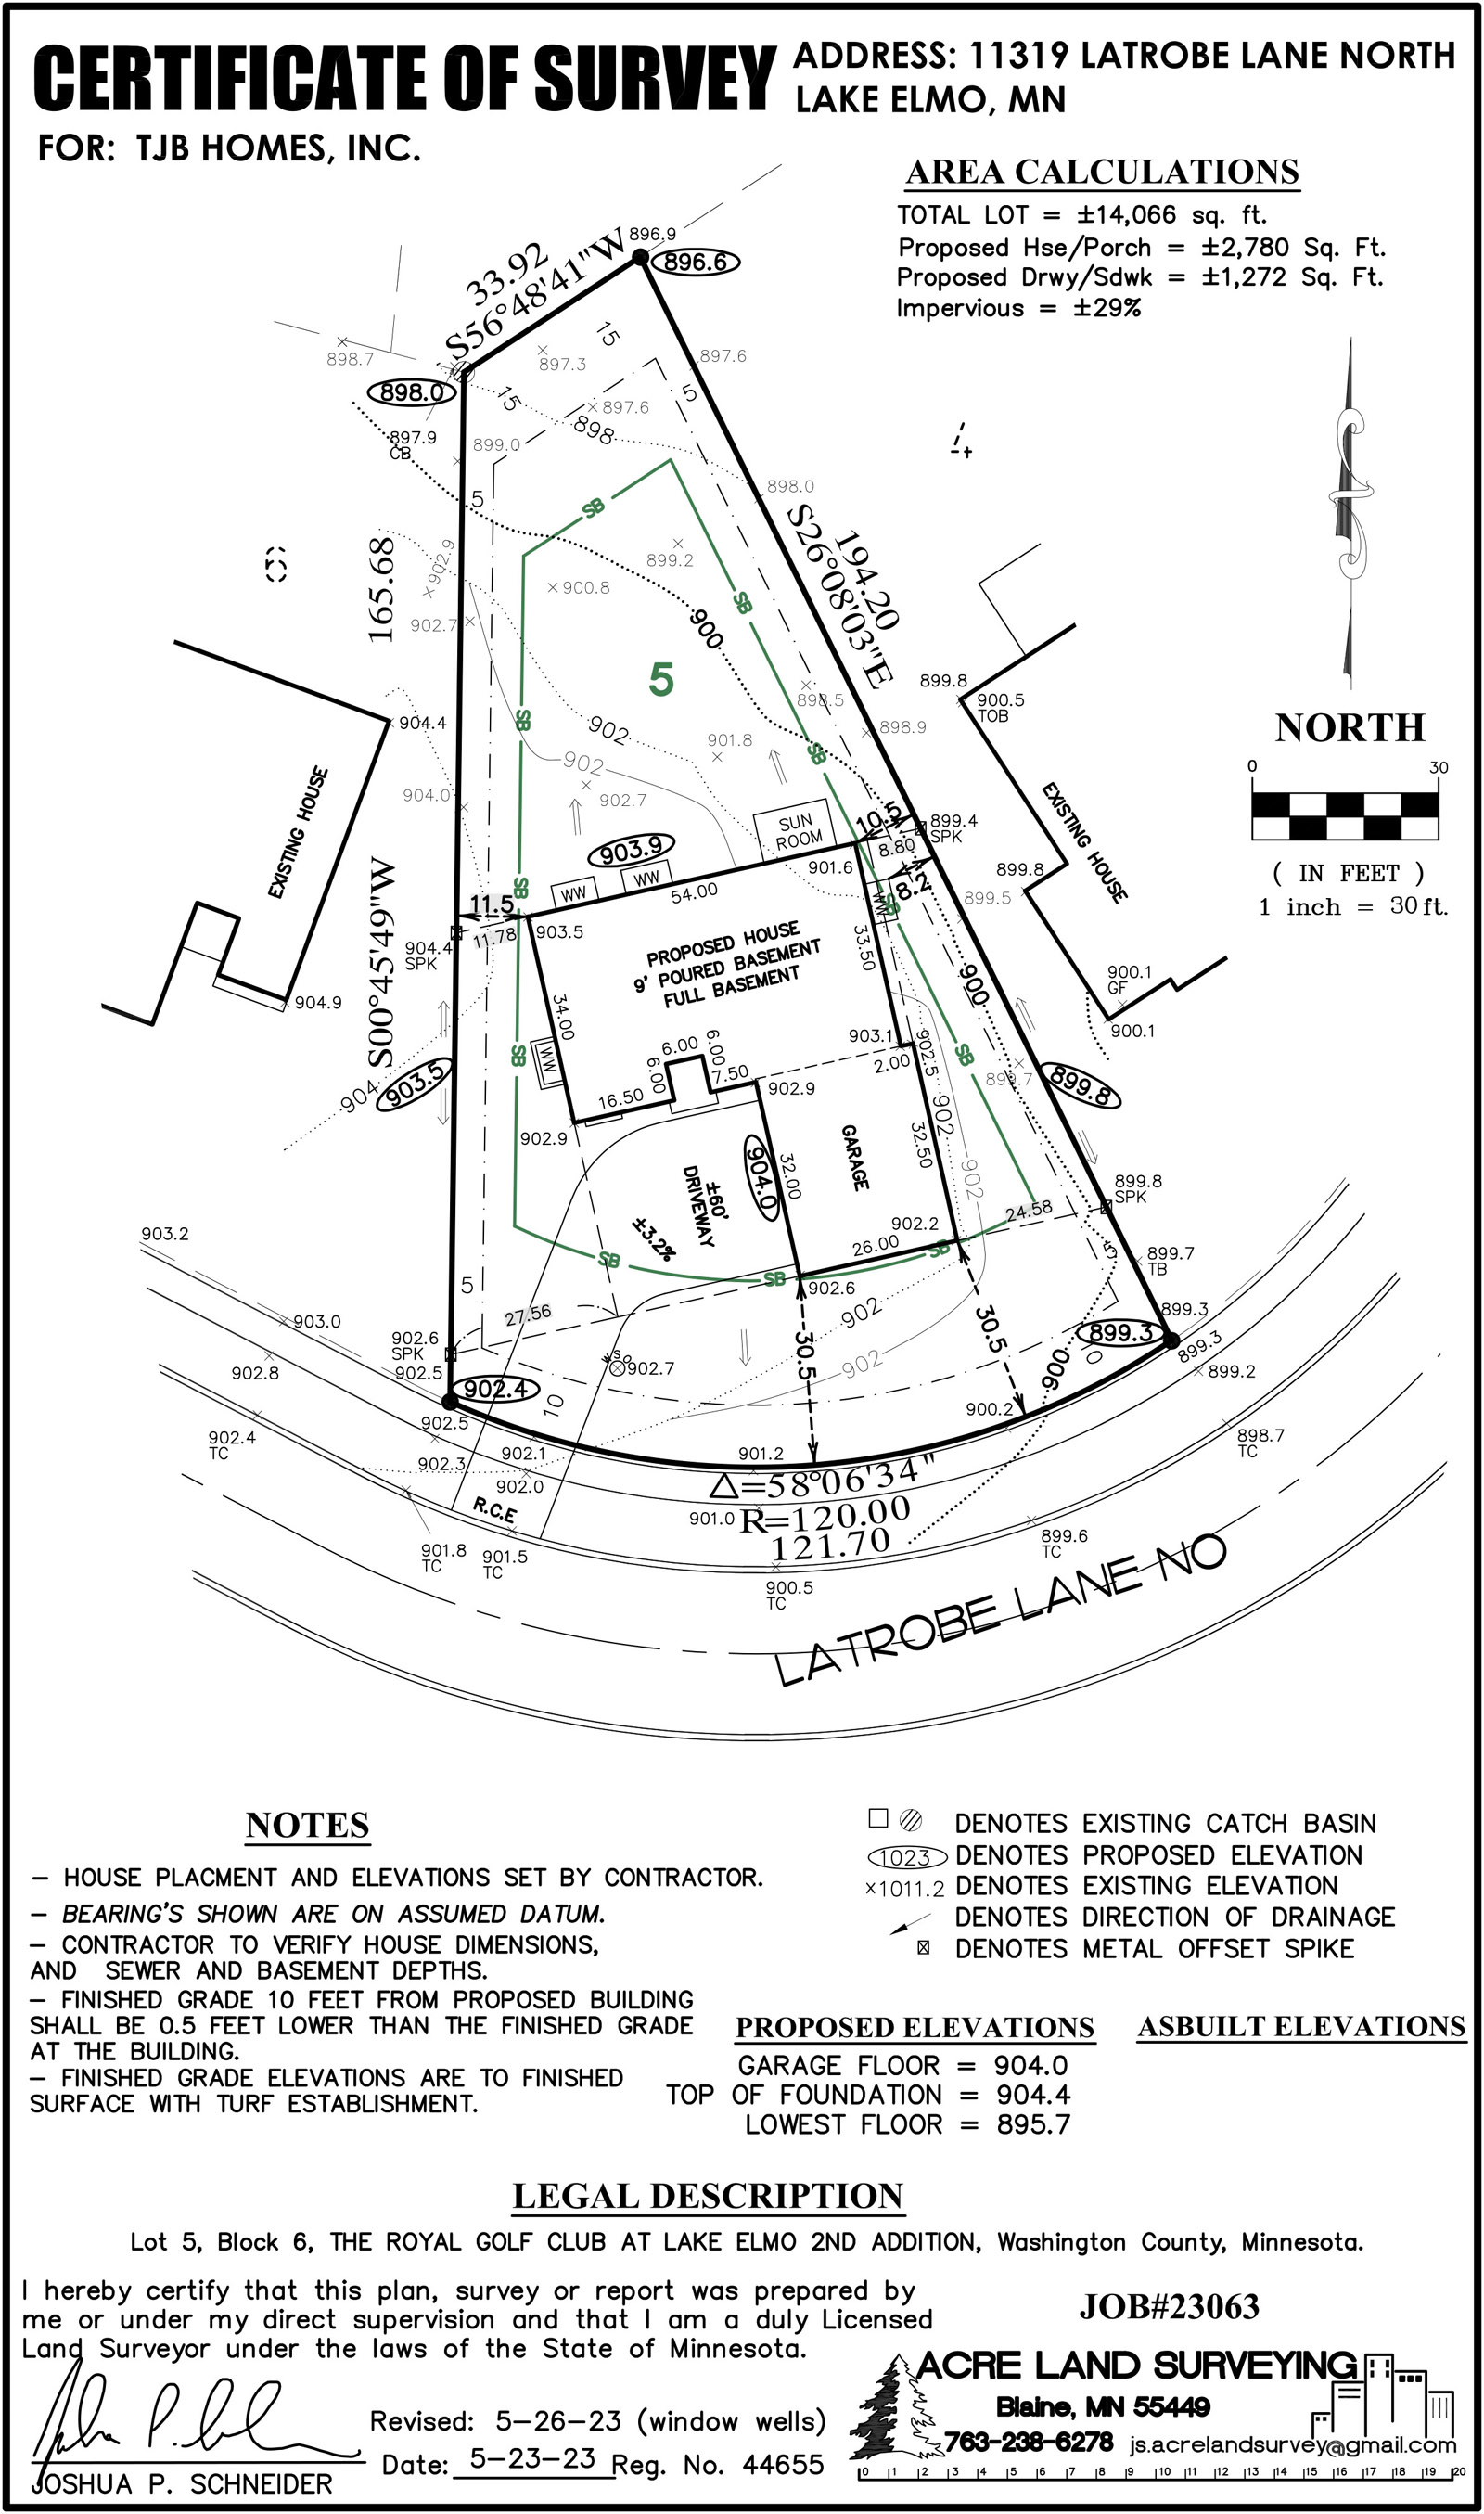 11319 Latrobe Drive, Lake Elmo, MN Home Site Survey